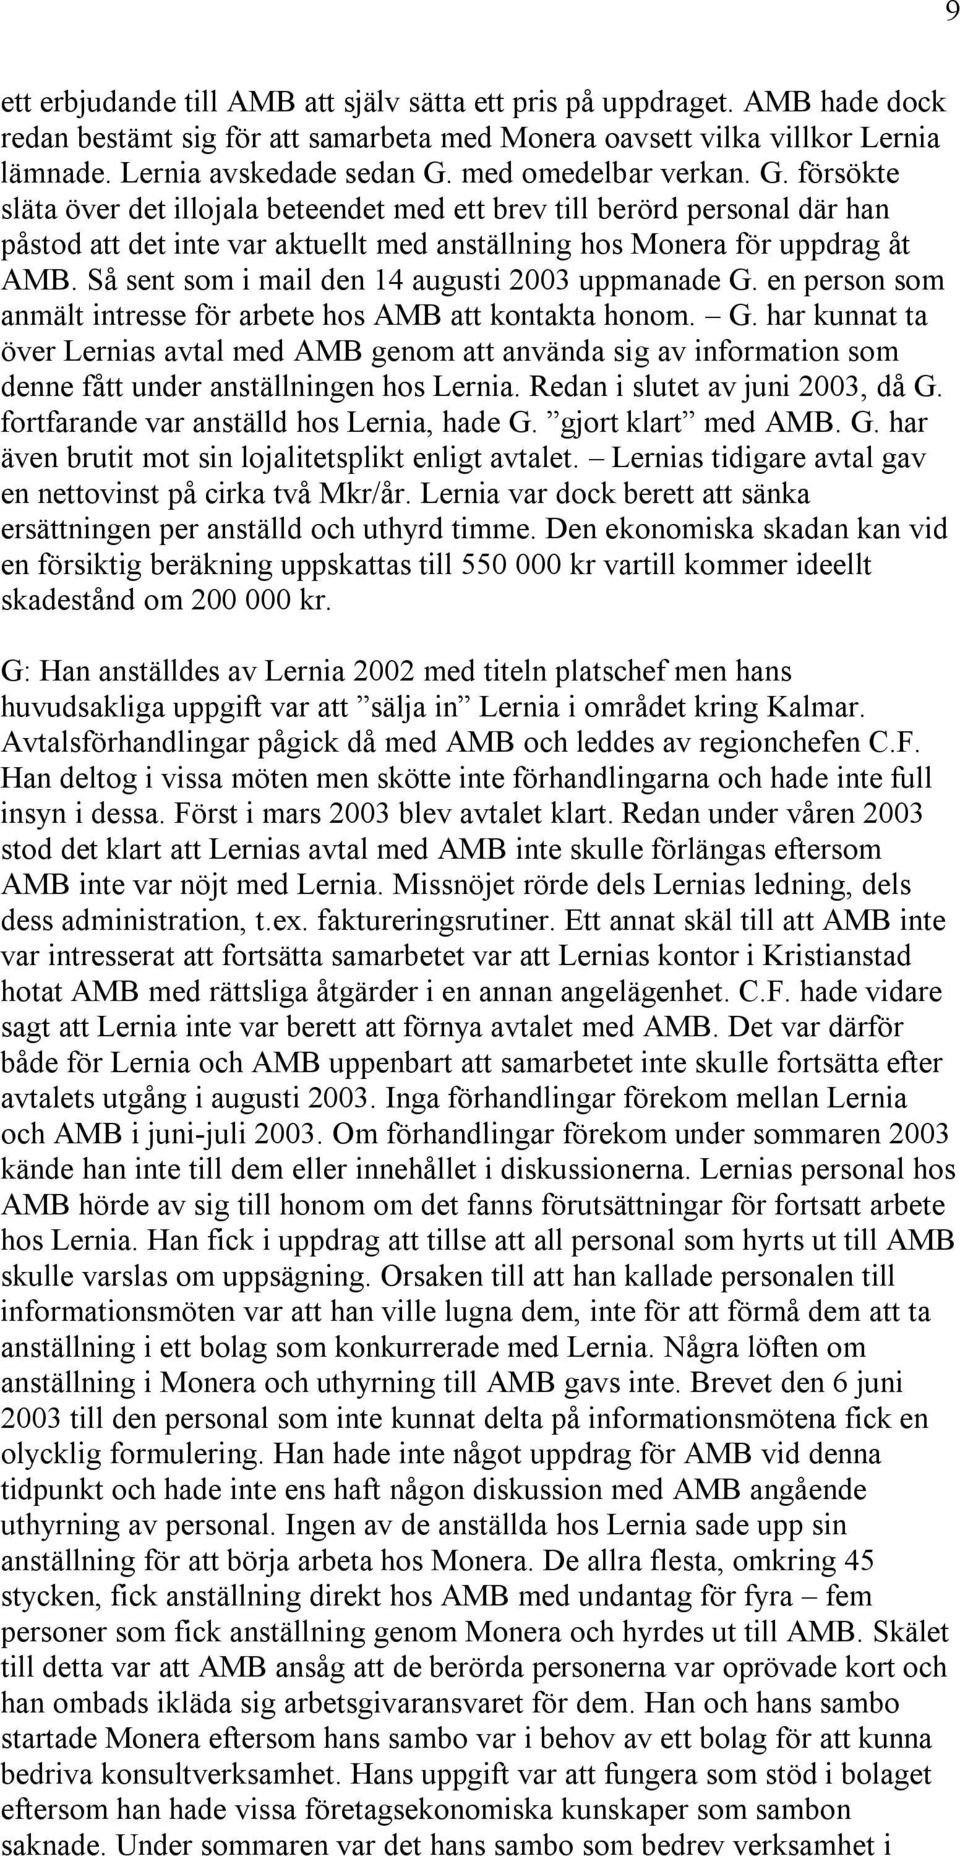 Så sent som i mail den 14 augusti 2003 uppmanade G. en person som anmält intresse för arbete hos AMB att kontakta honom. G. har kunnat ta över Lernias avtal med AMB genom att använda sig av information som denne fått under anställningen hos Lernia.